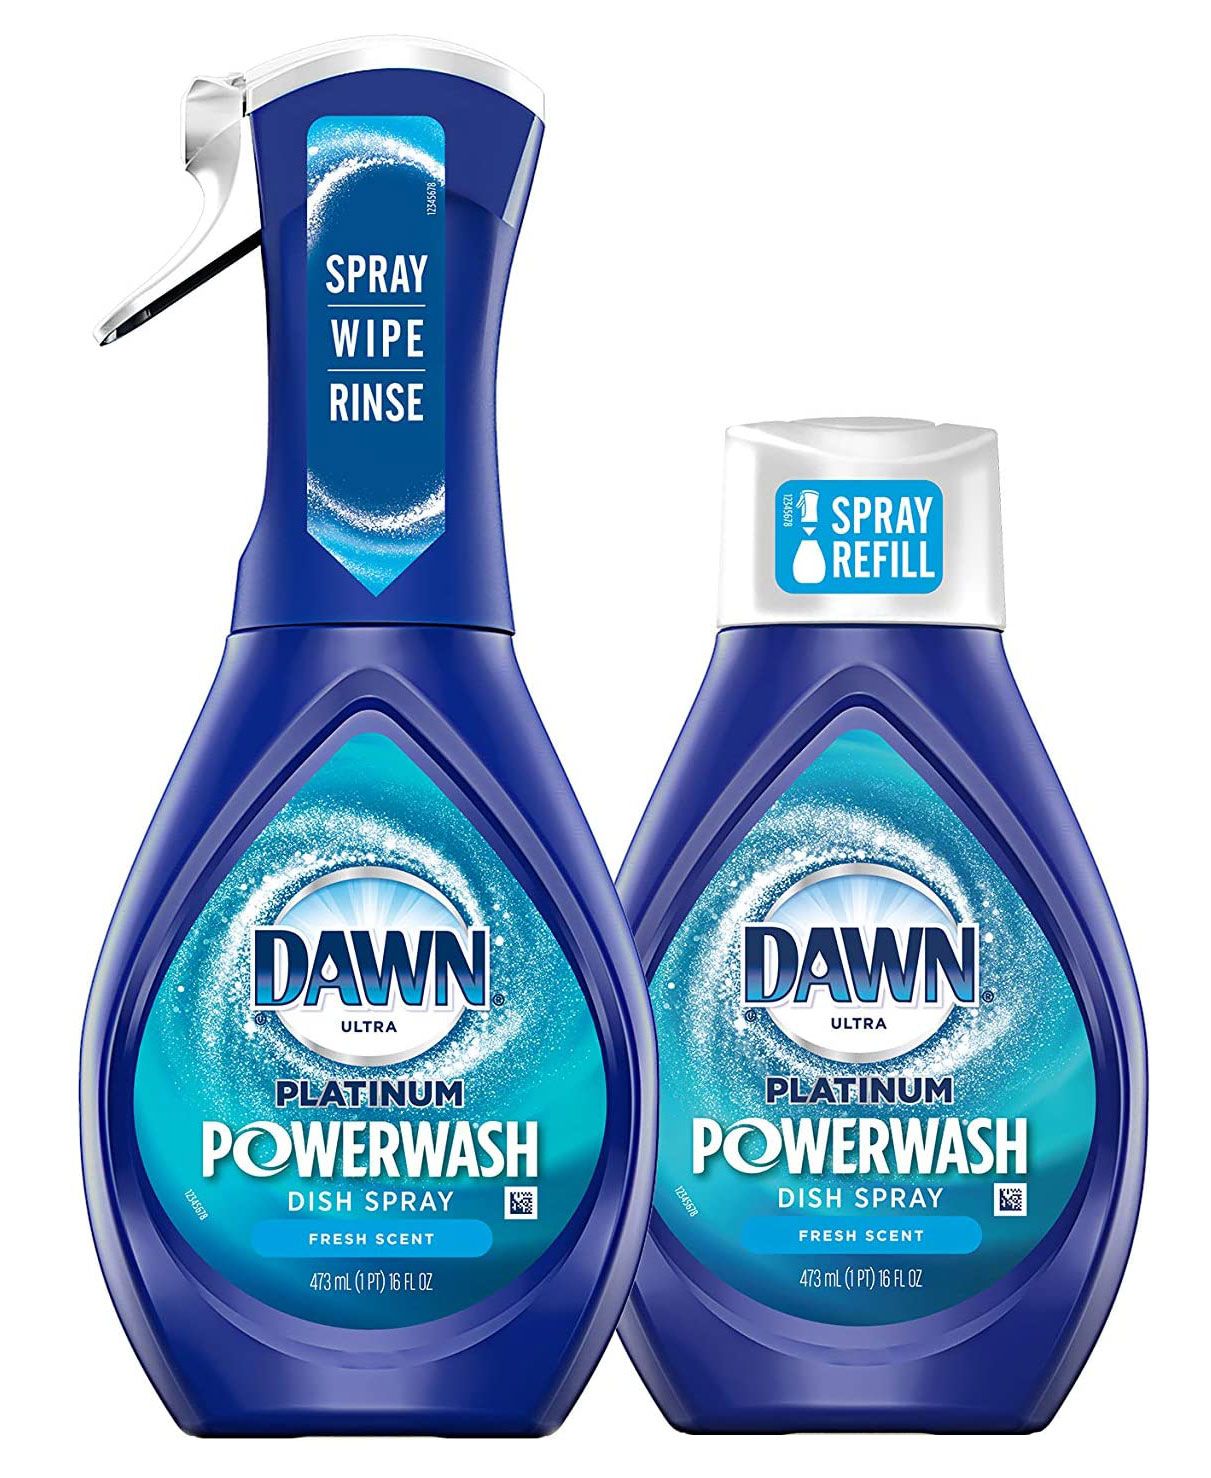 Articles les plus intelligents 2020 - Dawn Platinum Powerwash